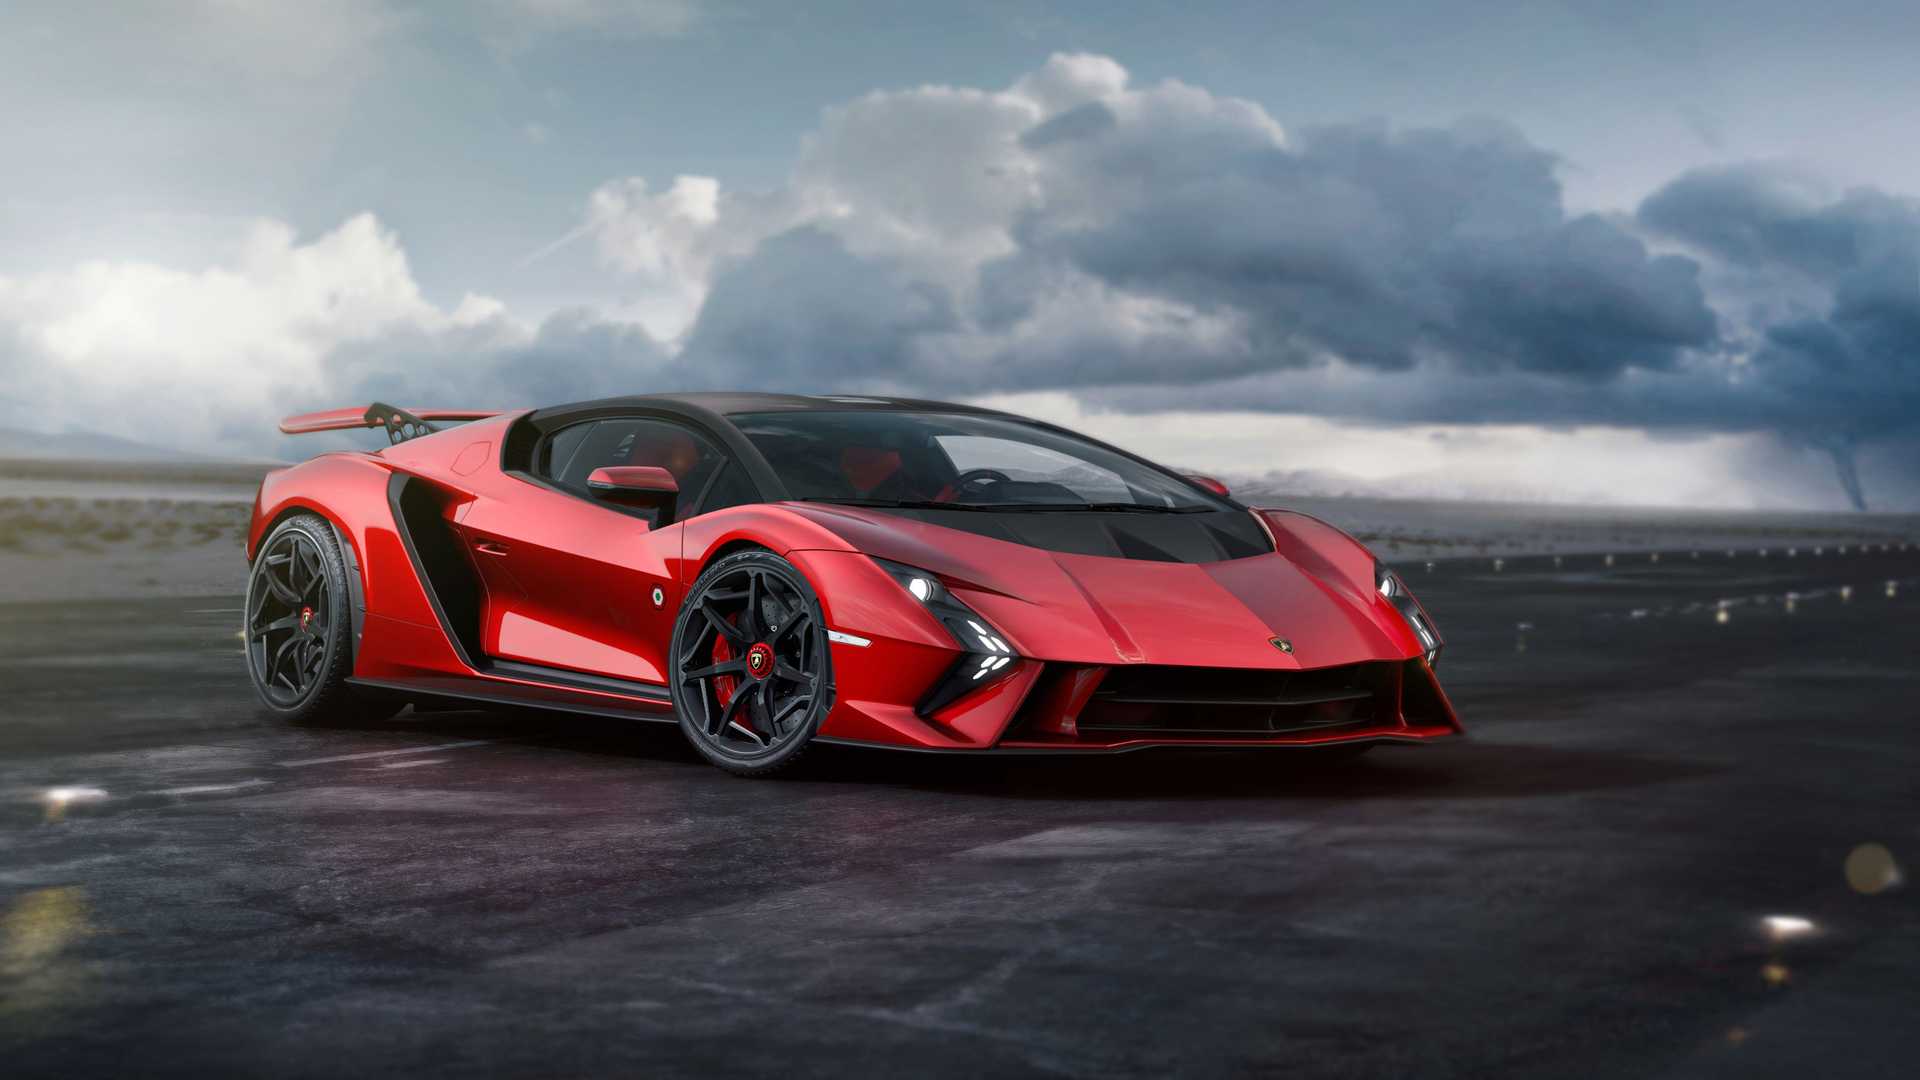 Lamborghini ra mắt bộ đôi siêu xe V12 chạy xăng cuối cùng, sau đây sẽ toàn siêu xe điện êm ru chưa biết nẹt pô kiểu gì - ảnh 5